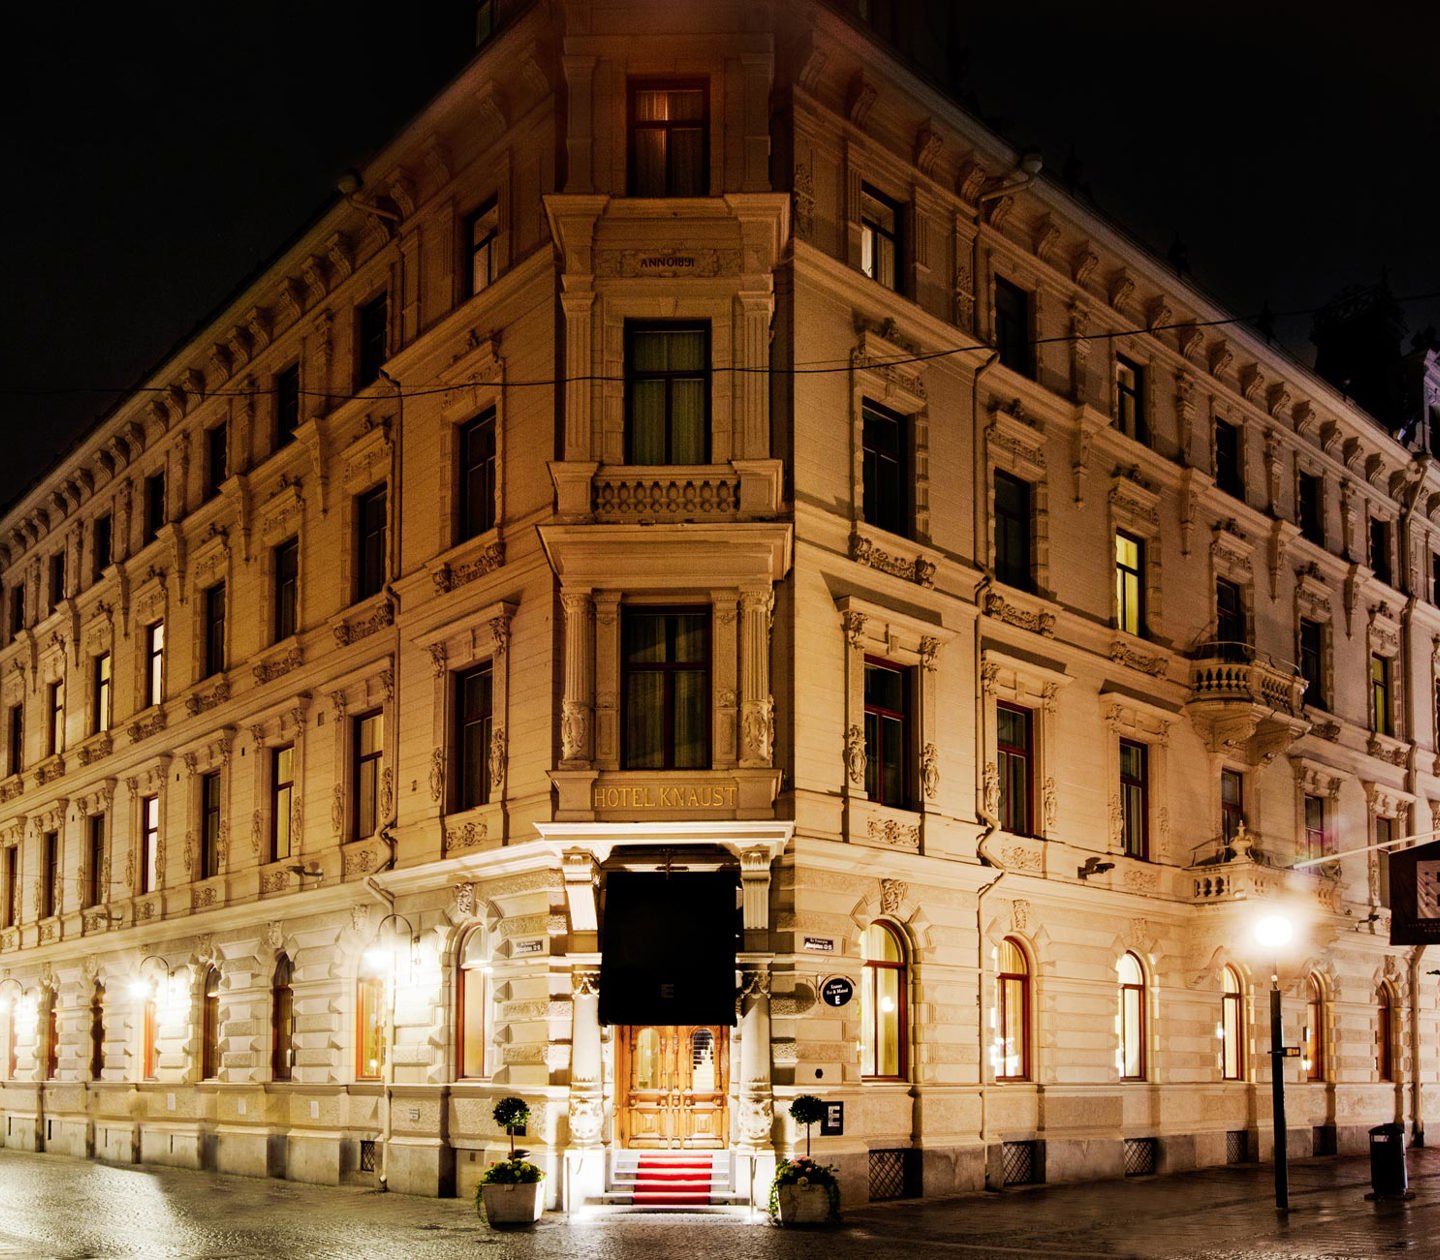 The facade of Elite Hotel Knaust